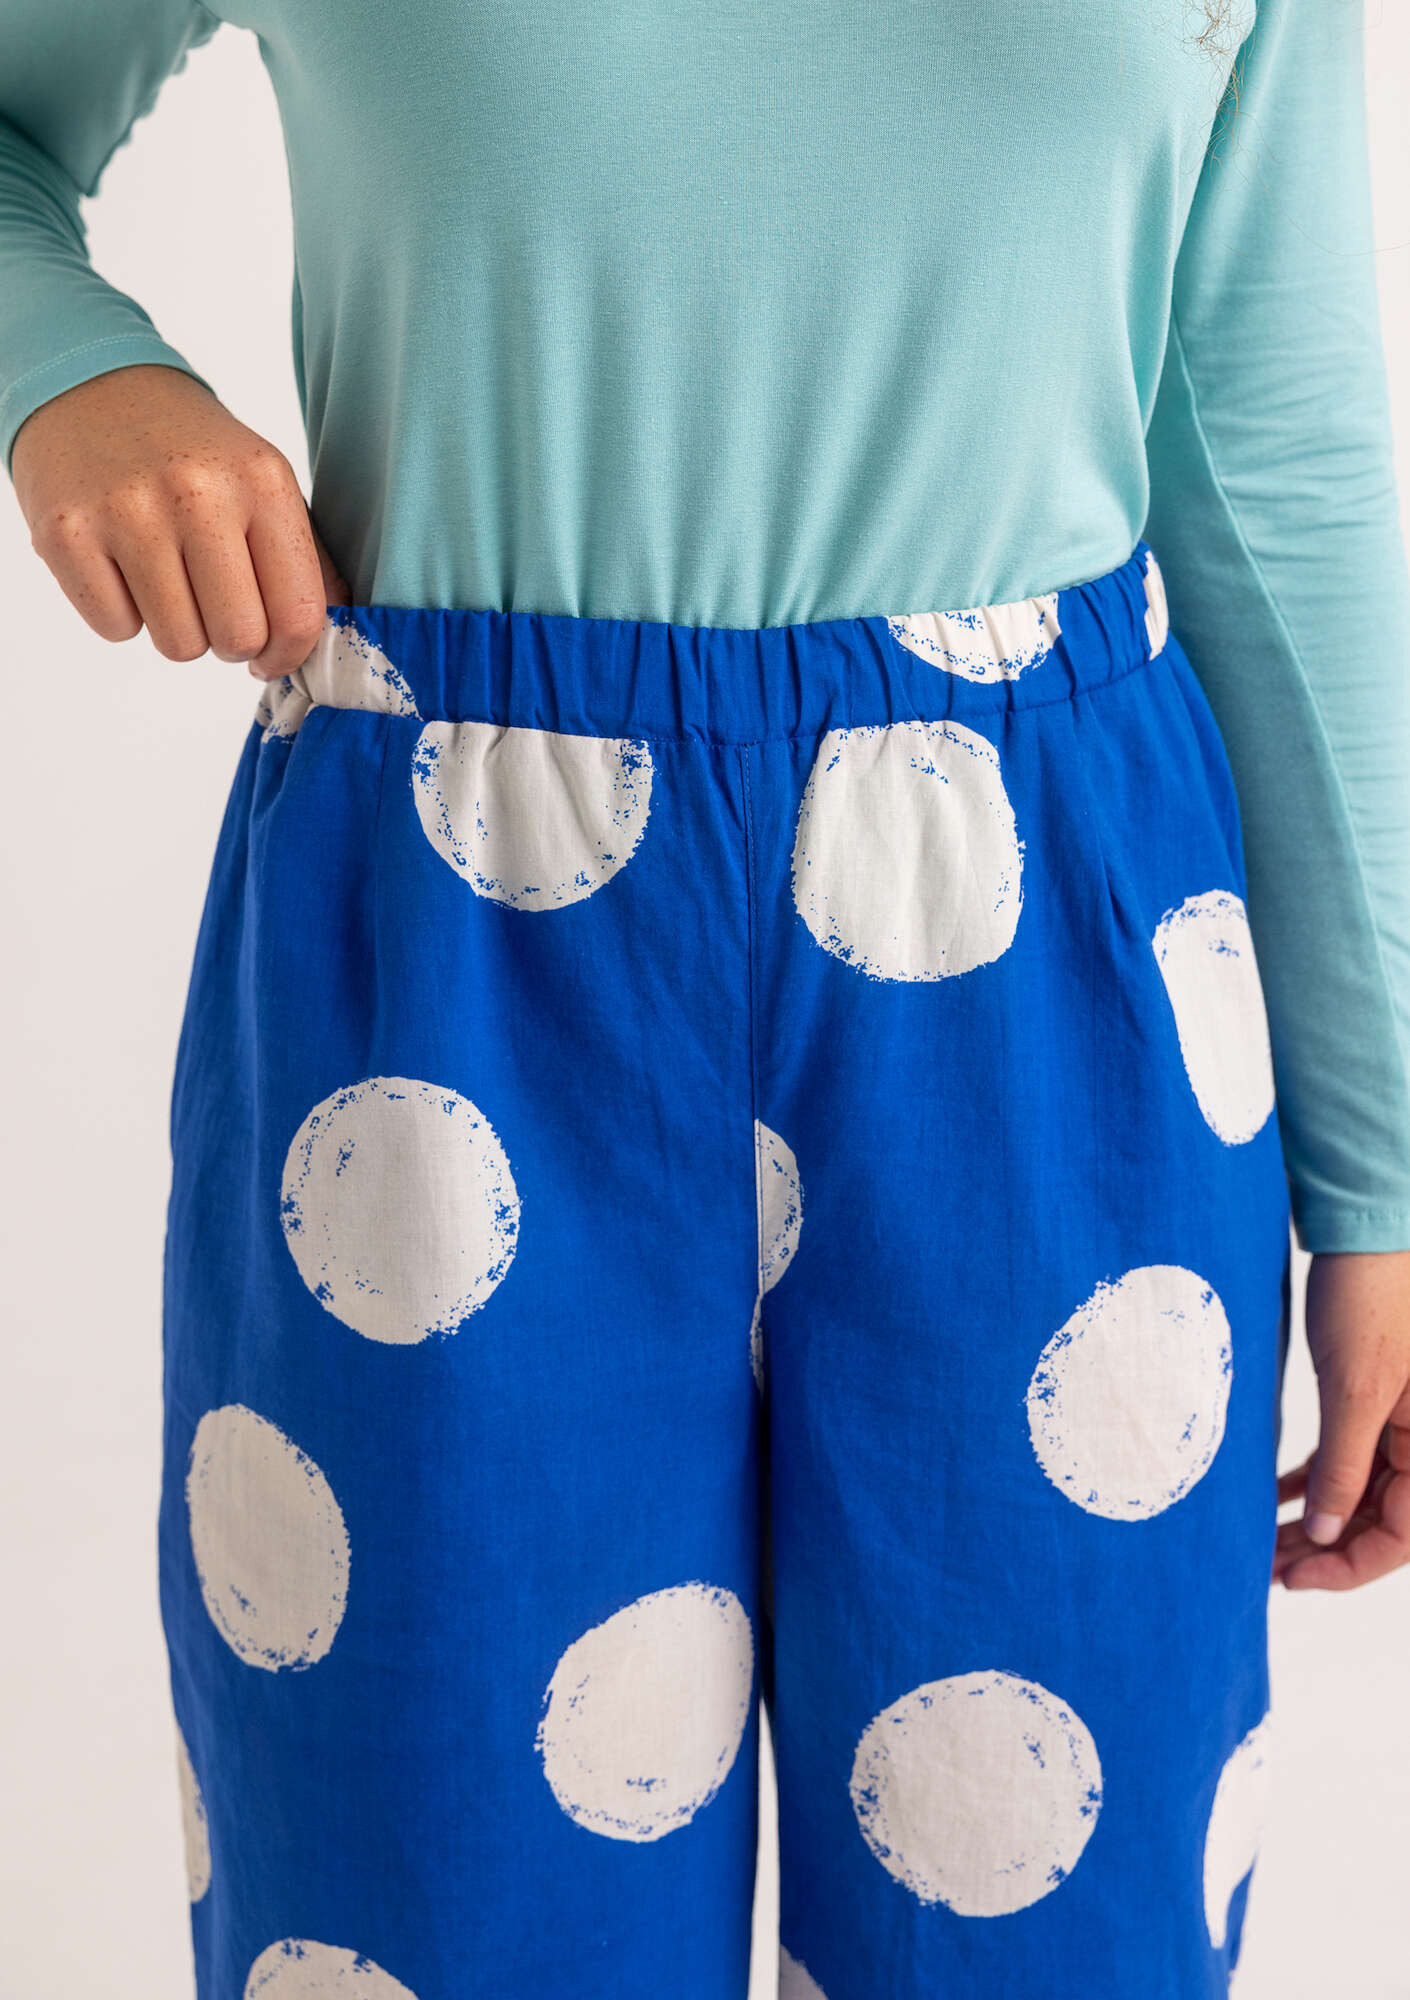  Pantalon  Palette  en tissu de coton biologique bleu saphir/motif thumbnail